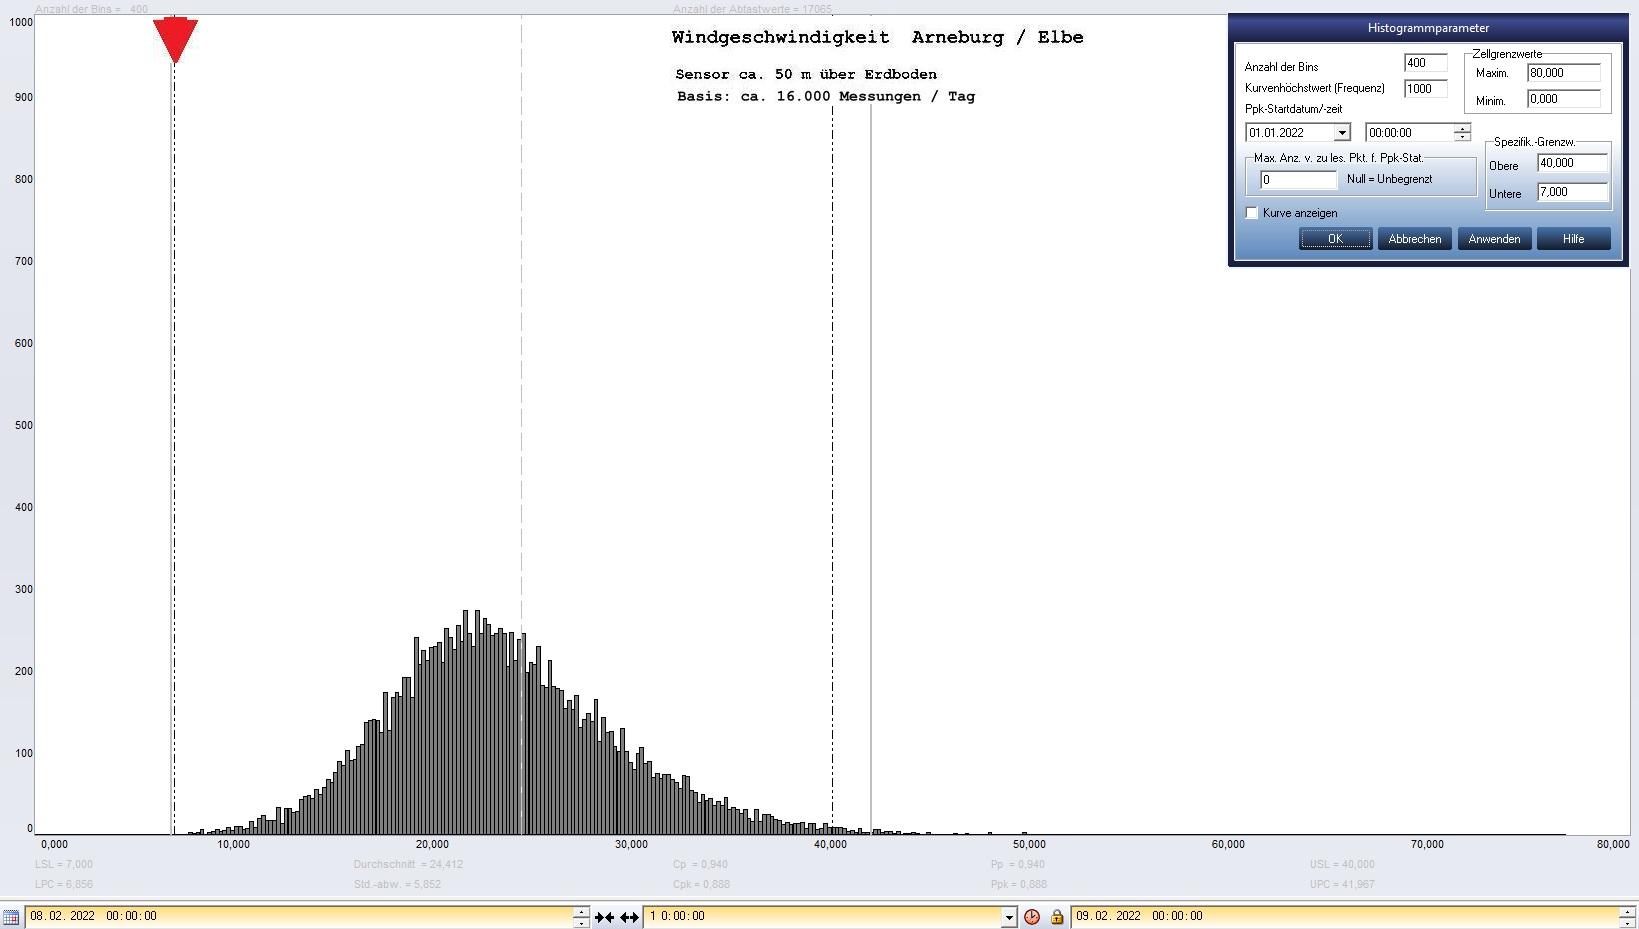 Arneburg Tages-Histogramm Winddaten, 08.02.2022
  Histogramm, Sensor auf Gebude, ca. 50 m ber Erdboden, Basis: 5s-Aufzeichnung